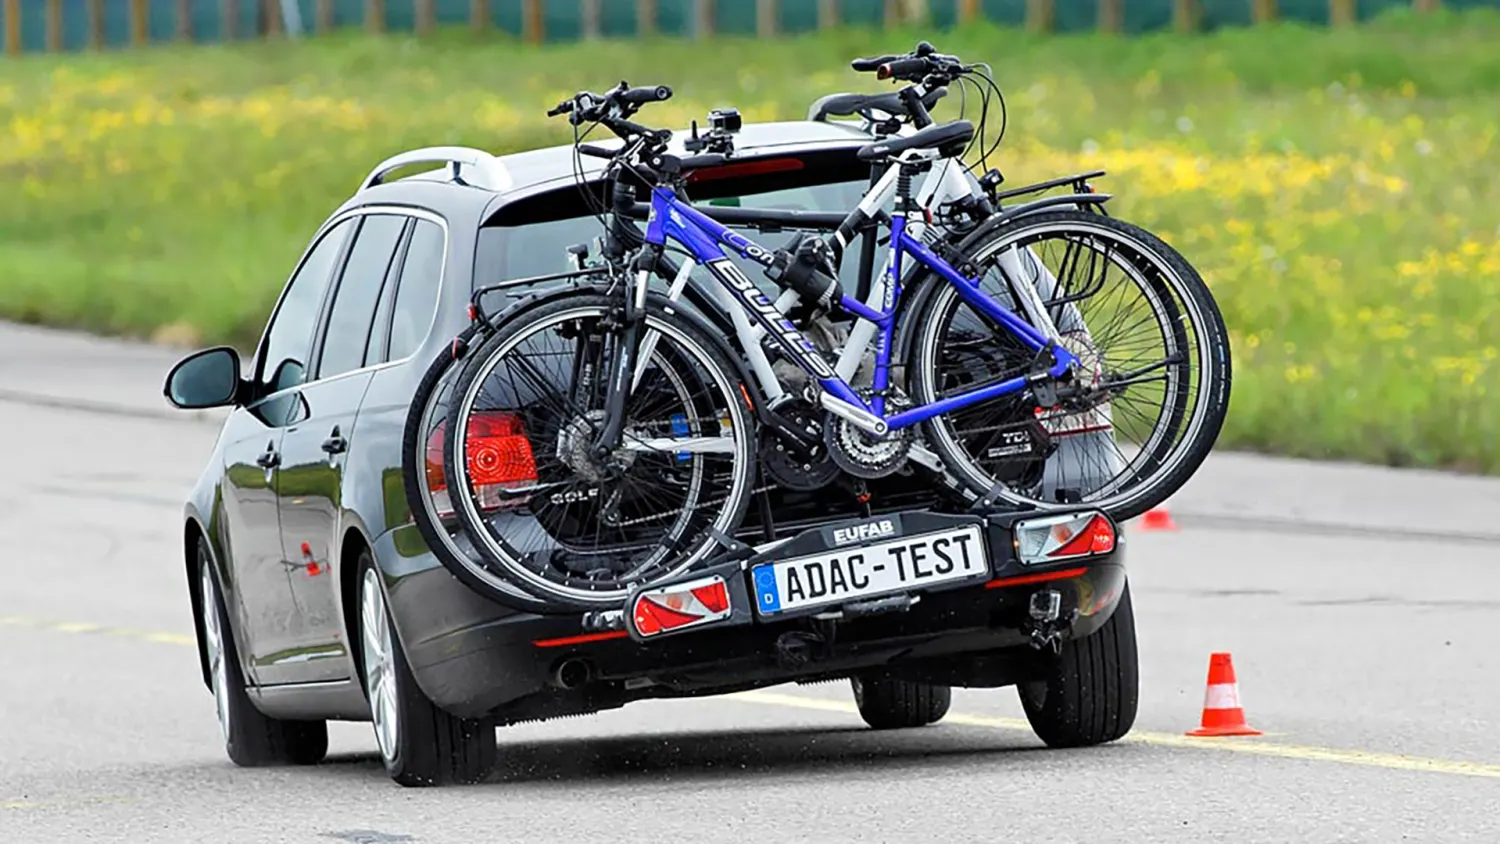 Fahrradträger am Auto: Kennzeichen, Last, Breite, Co. – diese